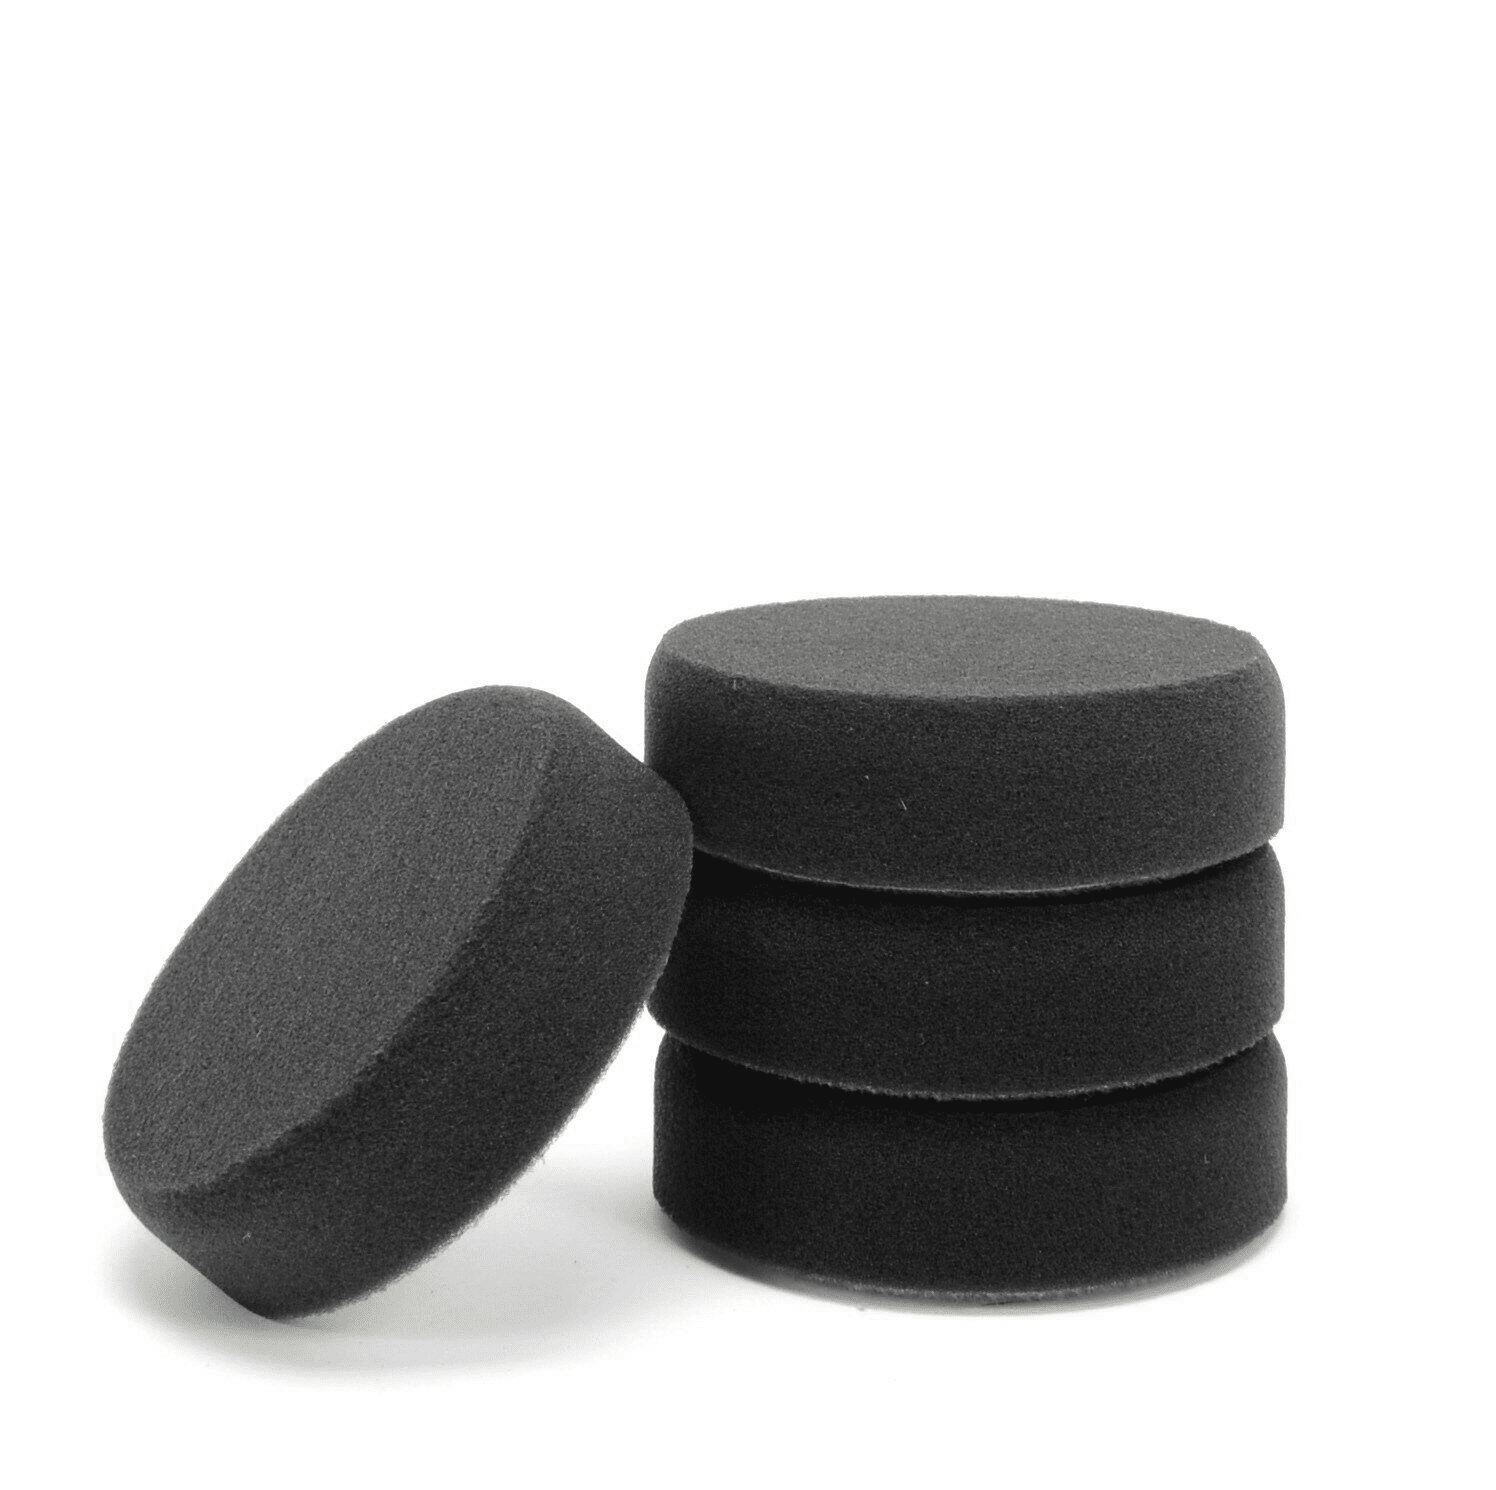 Polierschwamm 77mm schwarz glatt weich für Autolack und Politur Wachs 4er Set  resmi